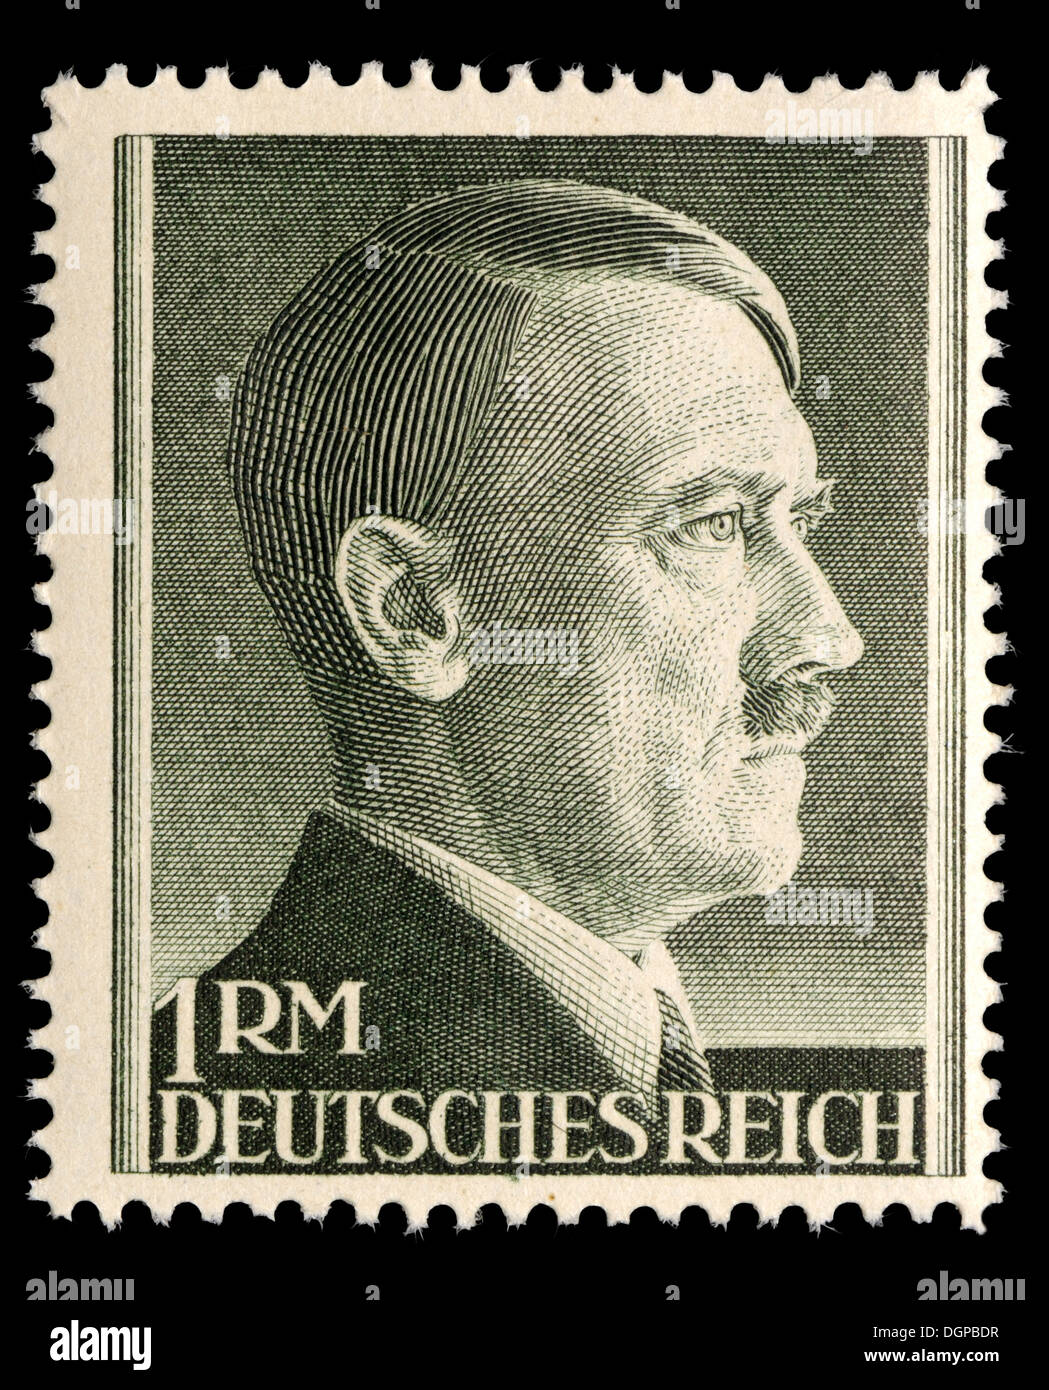 Adolf hitler stamp immagini e fotografie stock ad alta risoluzione - Alamy